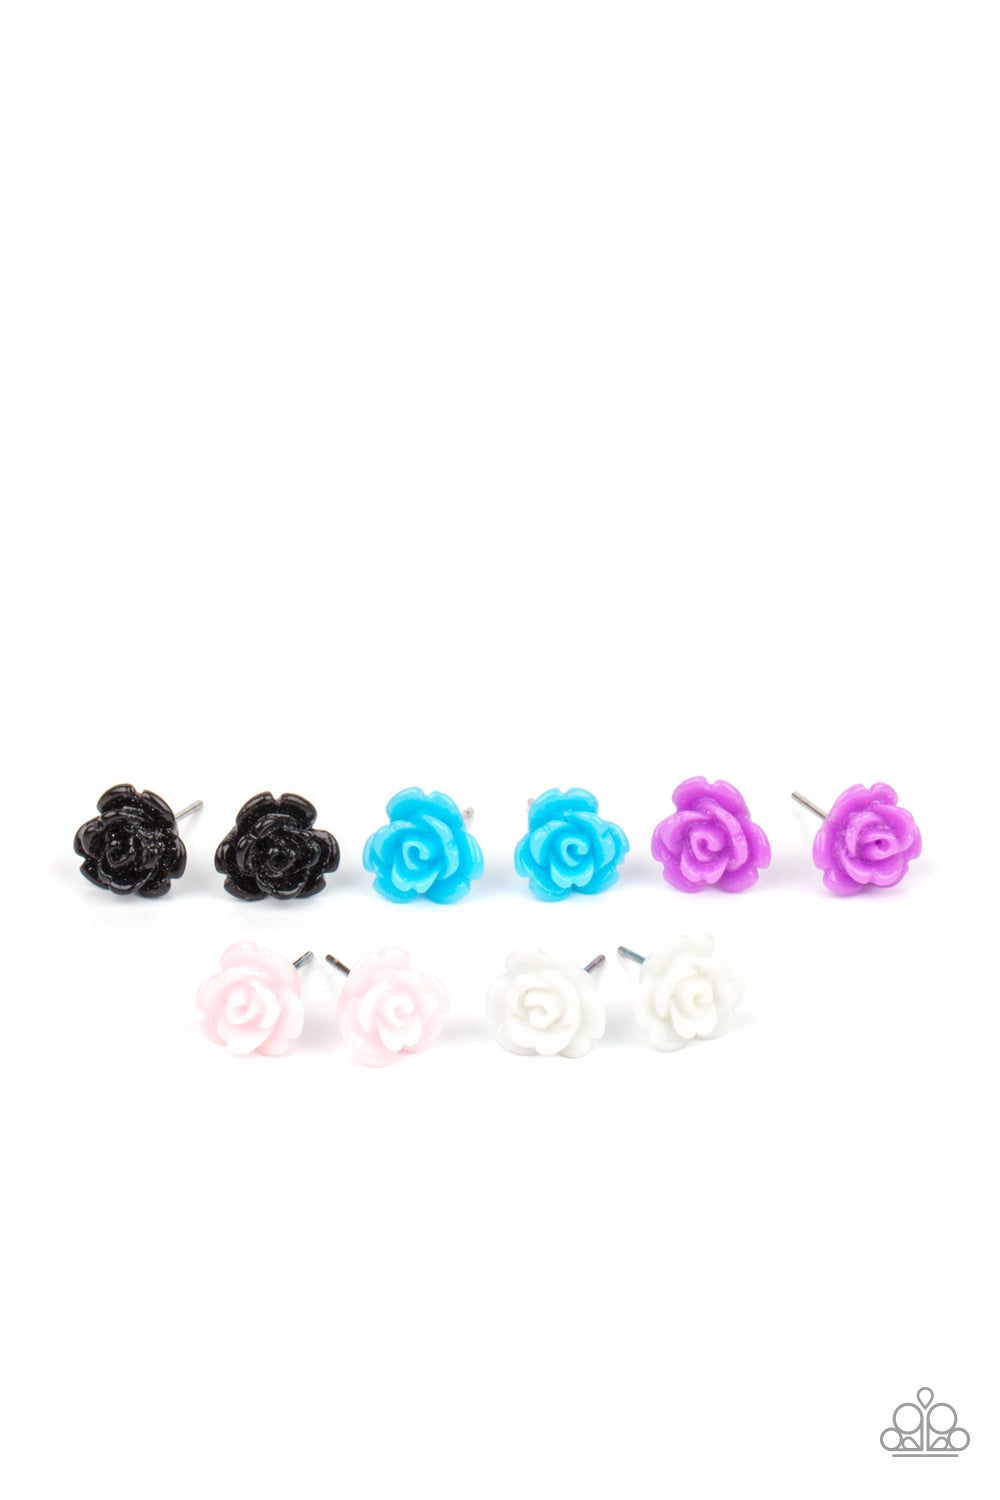 Starlet Shimmer ♥ Rosebud Studs♥ Earrings ♥Pack of 5 Earrings♥ Paparazzi ♥